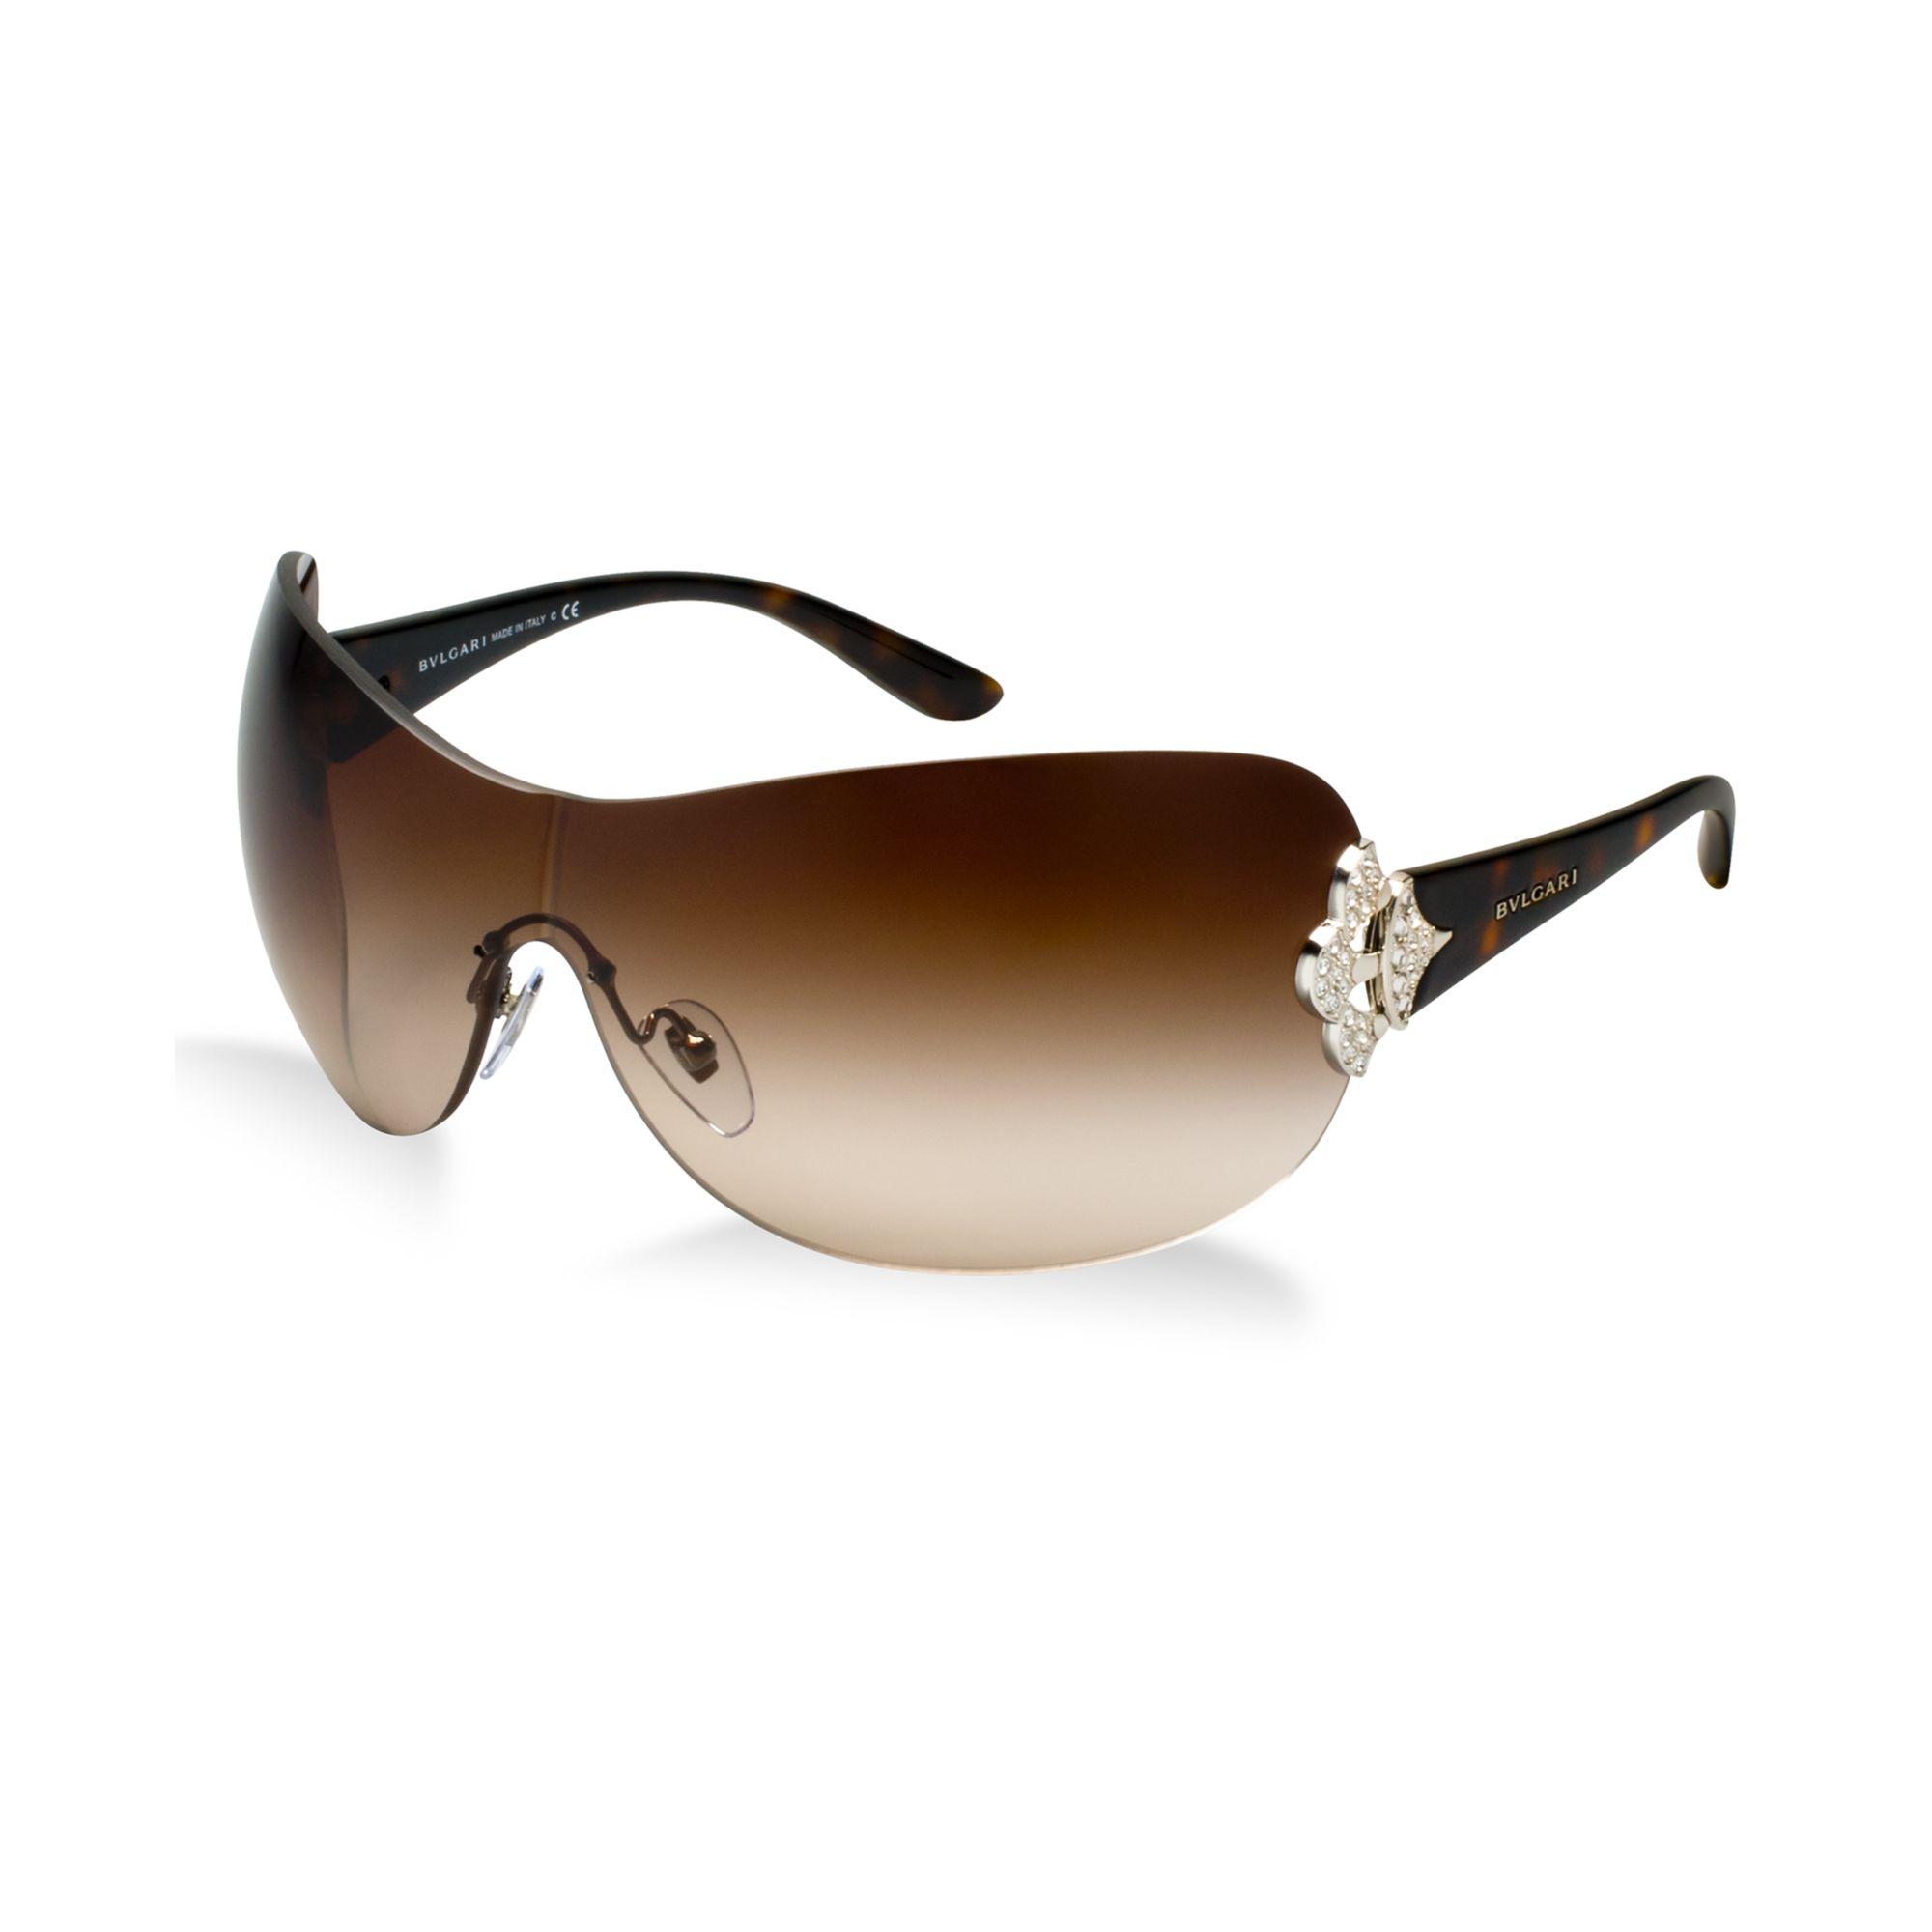 Lyst - Bvlgari Sunglasses in Brown